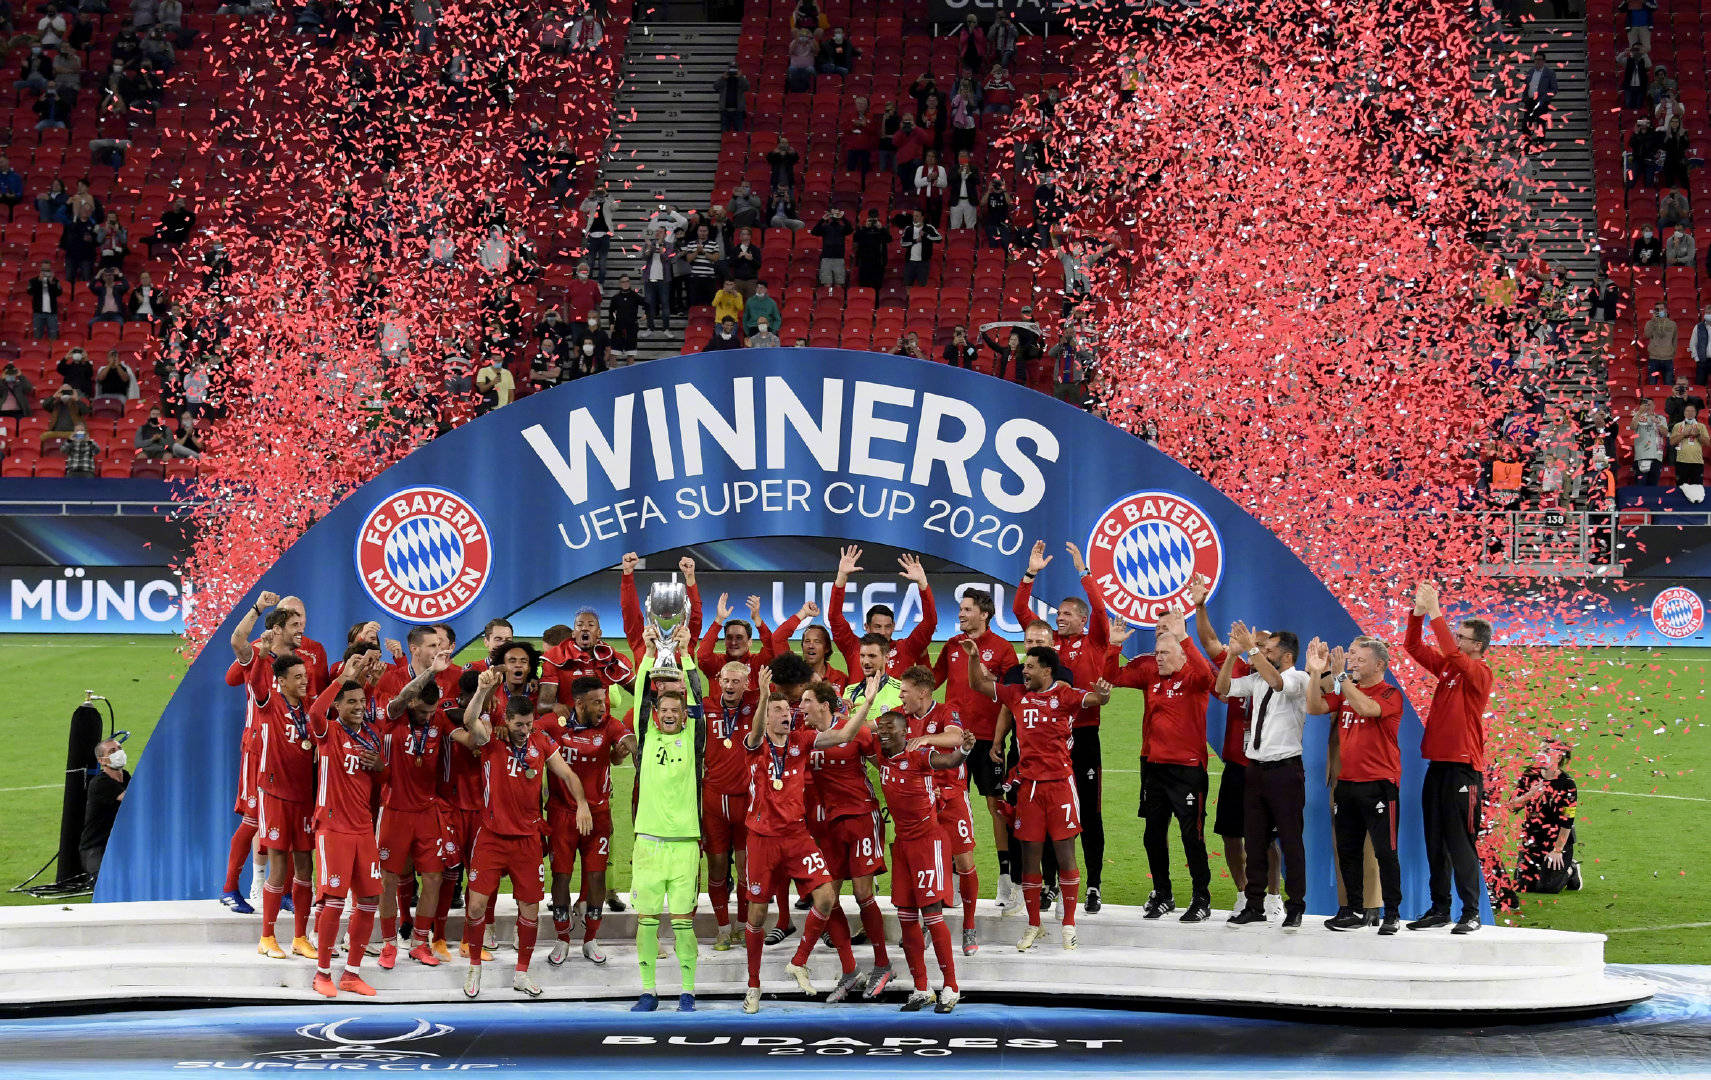 拜仁慕尼黑足球俱乐部夺得欧洲超级杯冠军,赛后拜仁球员庆祝夺冠